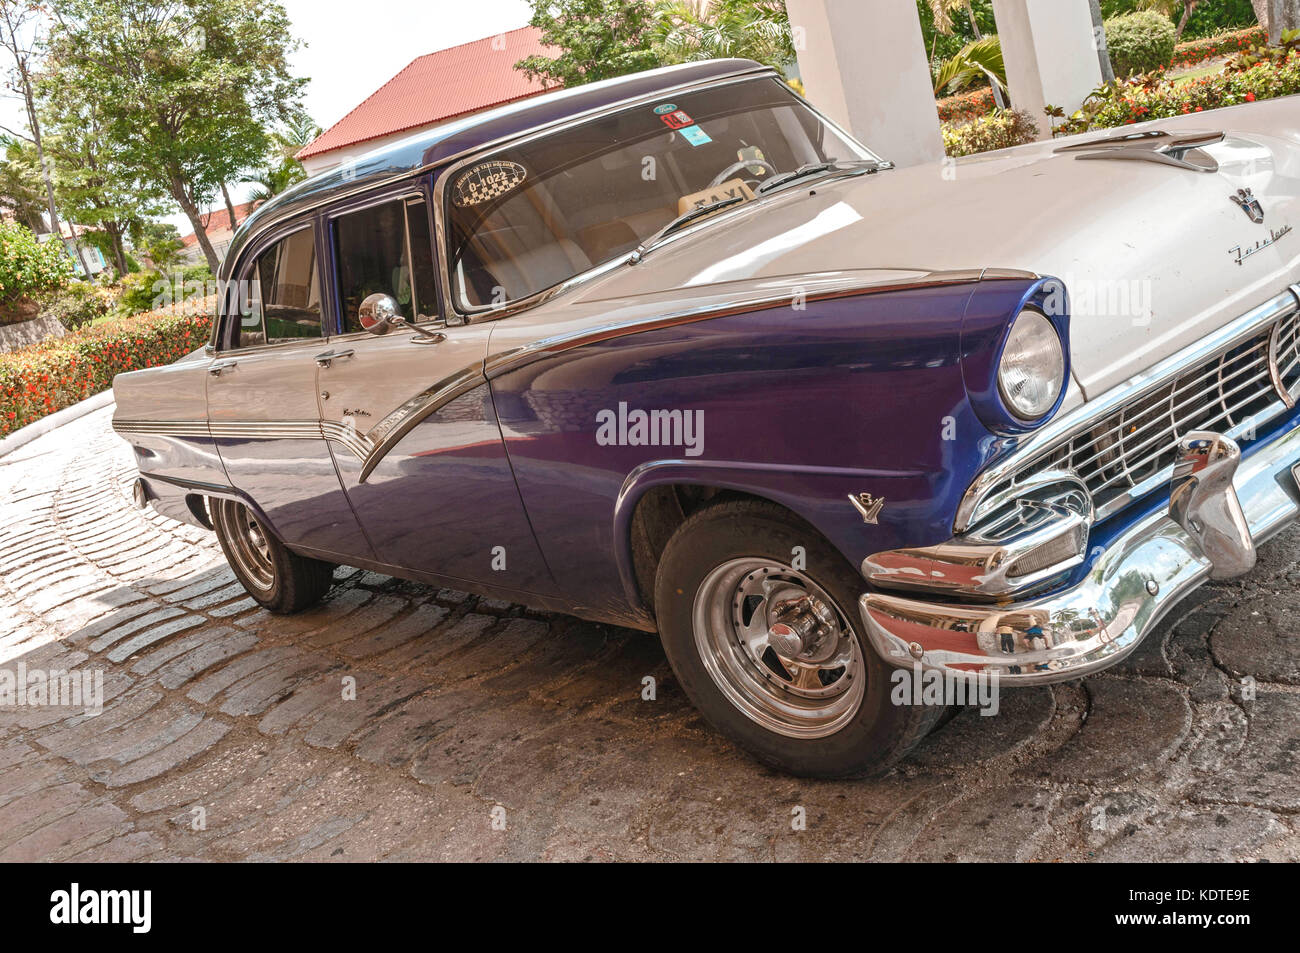 Guardalavaca,Cuba - June 16, 2015: Classic 1950's American Taxi, Stock Photo